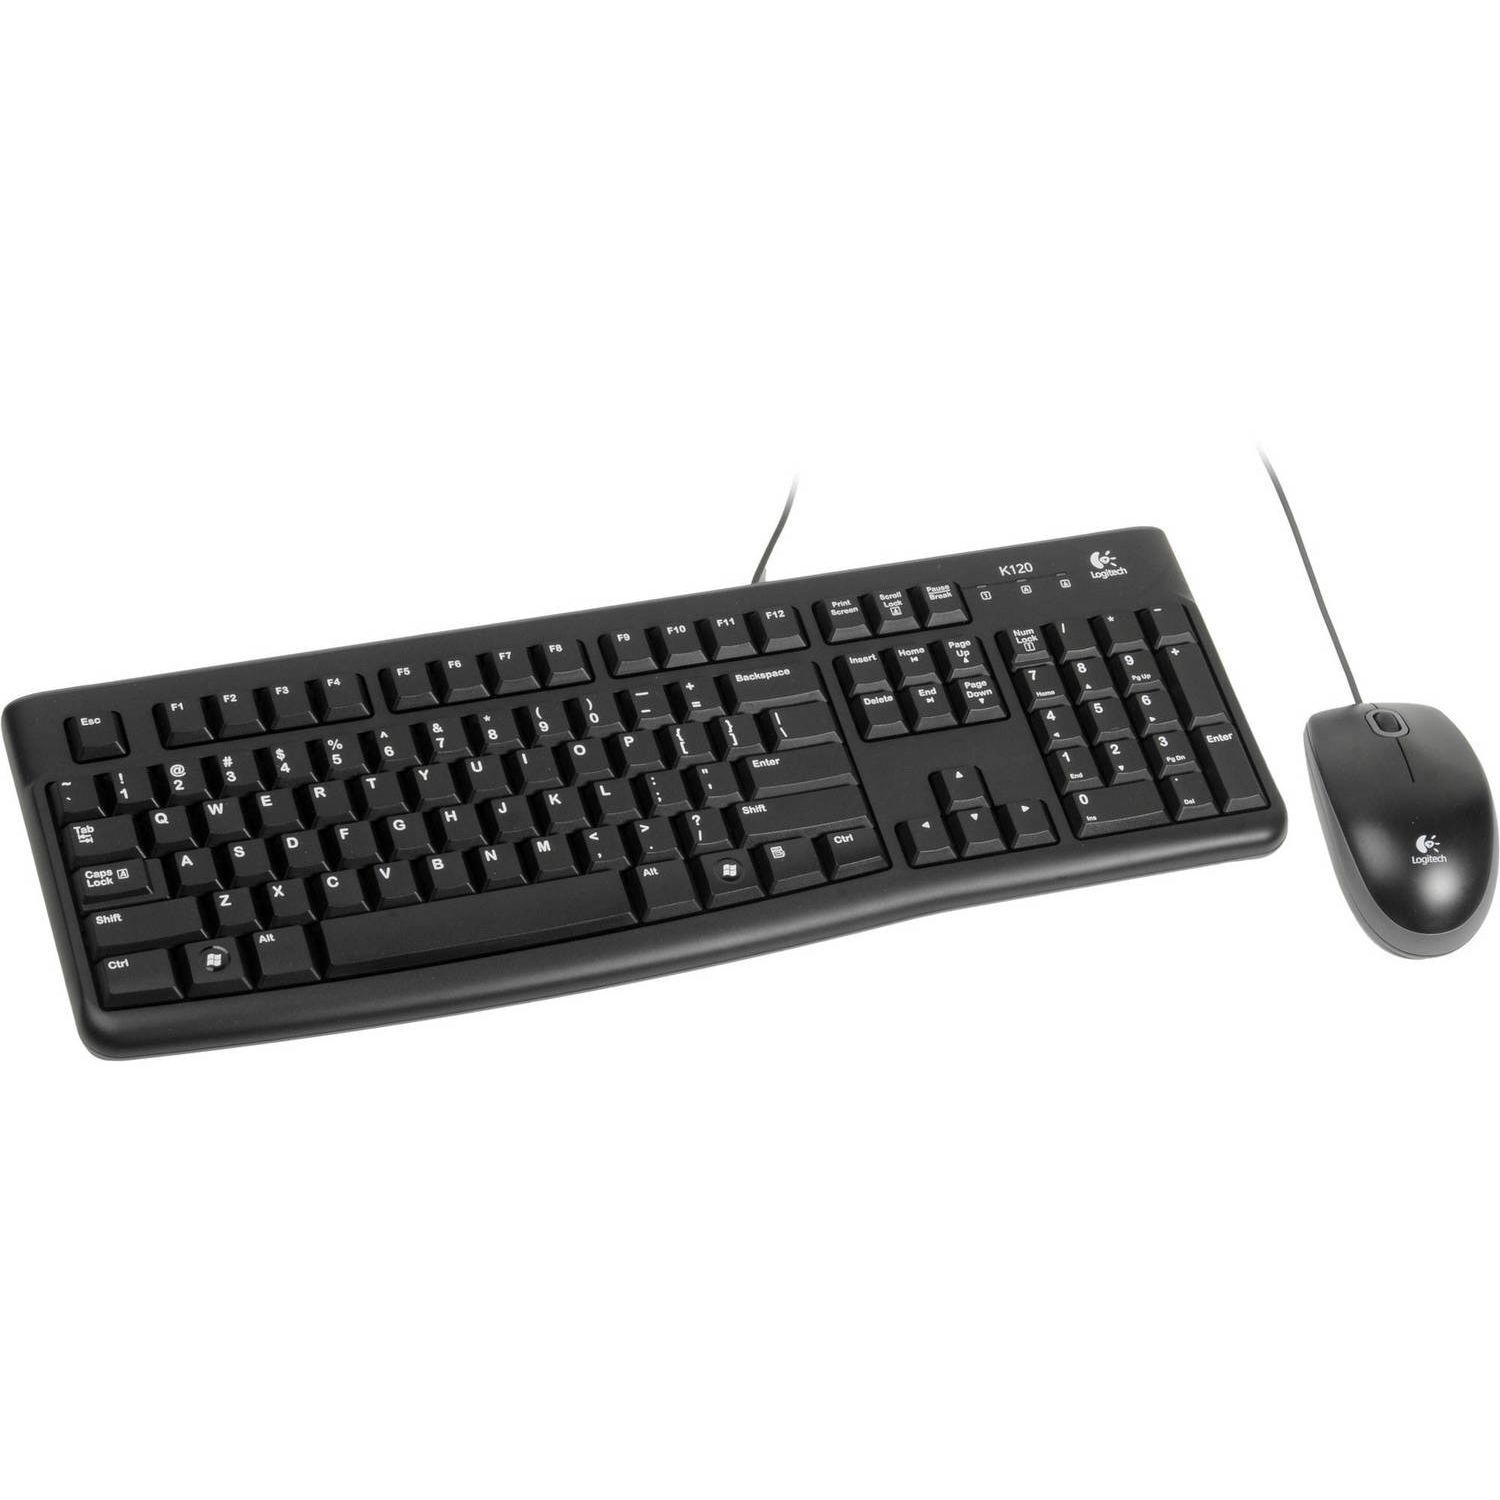 Комплект клавиатура и мышь Logitech Комплект Logitech Desktop MK121 цвет черный, USB, RTL Logitech - фото 1